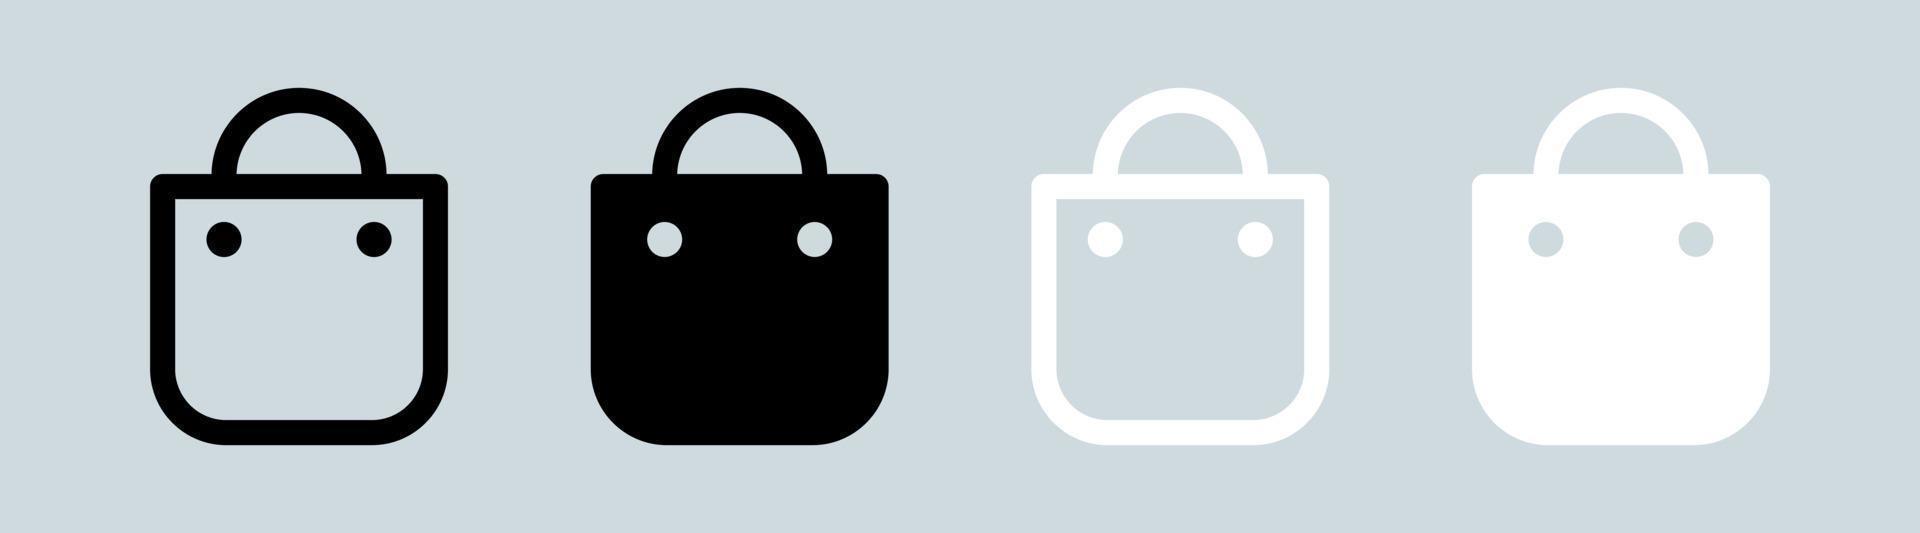 ícono de bolsa de compras en colores blanco y negro. signo de bolsa de compras para la interfaz de aplicaciones web o de comercio. vector